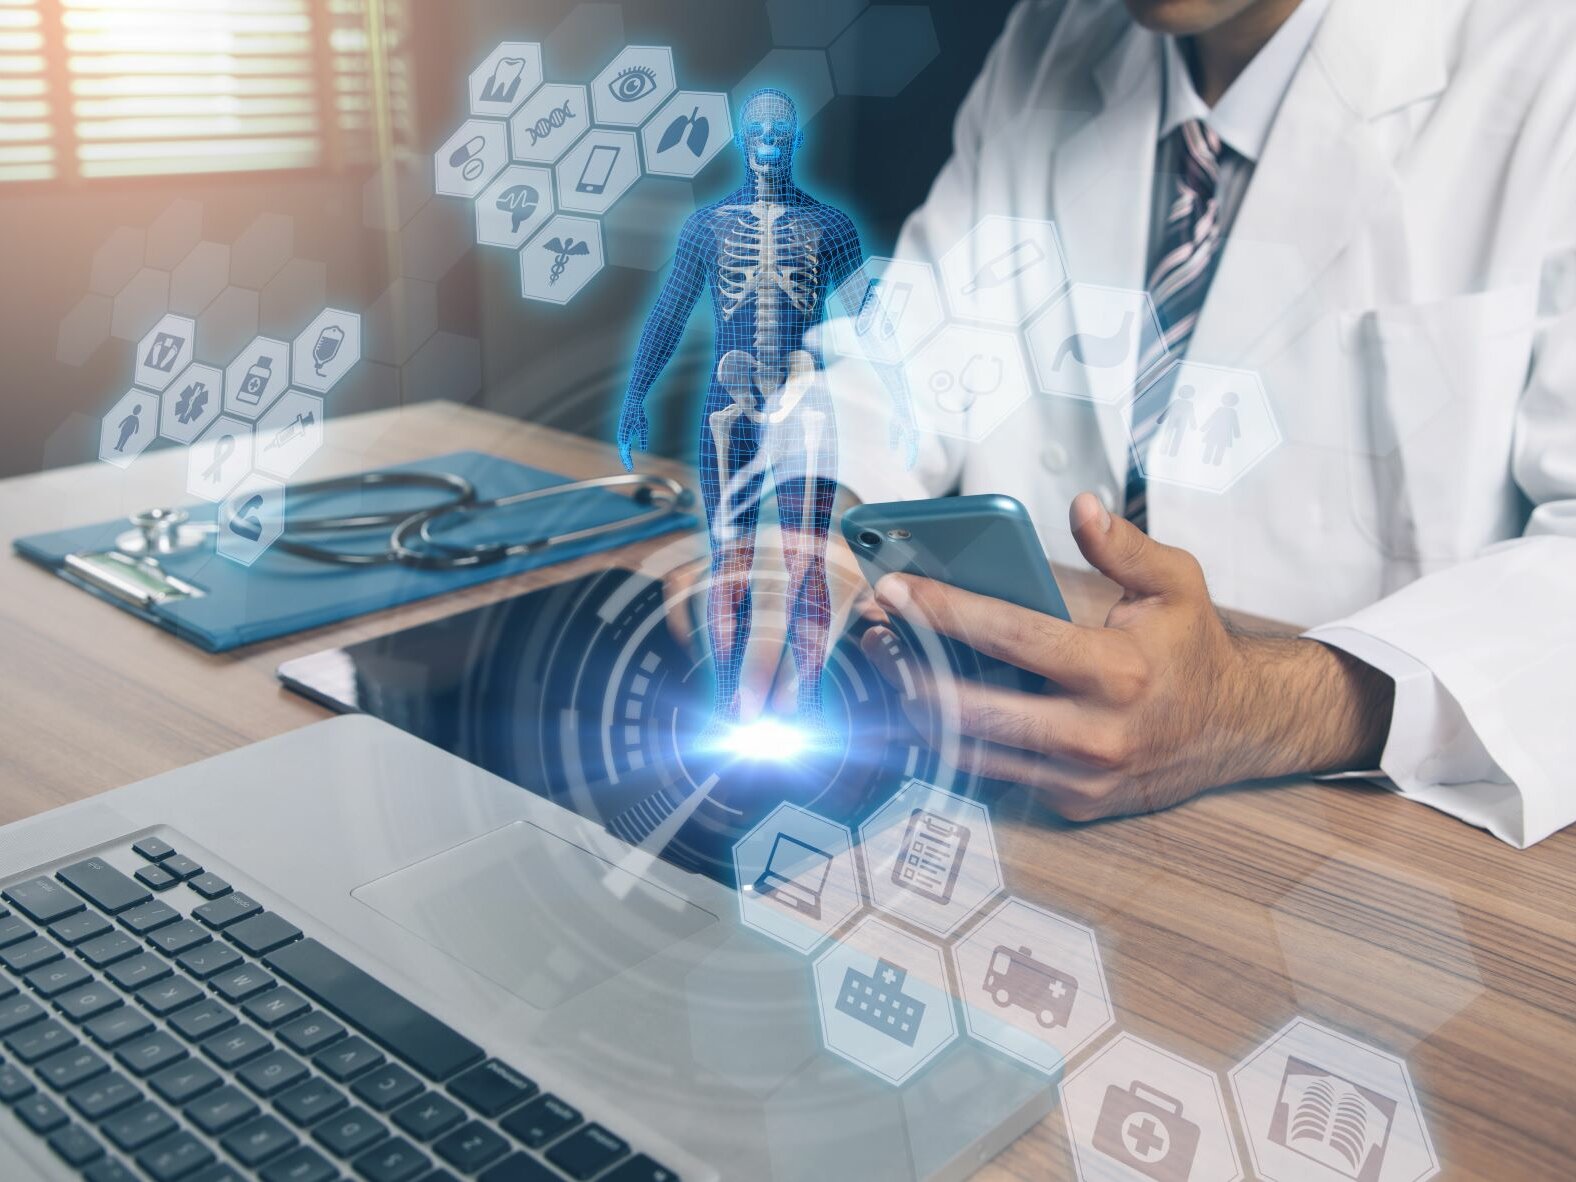 Arzt sitzt am Schreibtisch vor dem Laptop. In der Hand hält er ein Smartphone. Über dem Foto sind virtuelle eHealth-Tools sowie ein digitalisierter menschlicher Körper abgebildet.